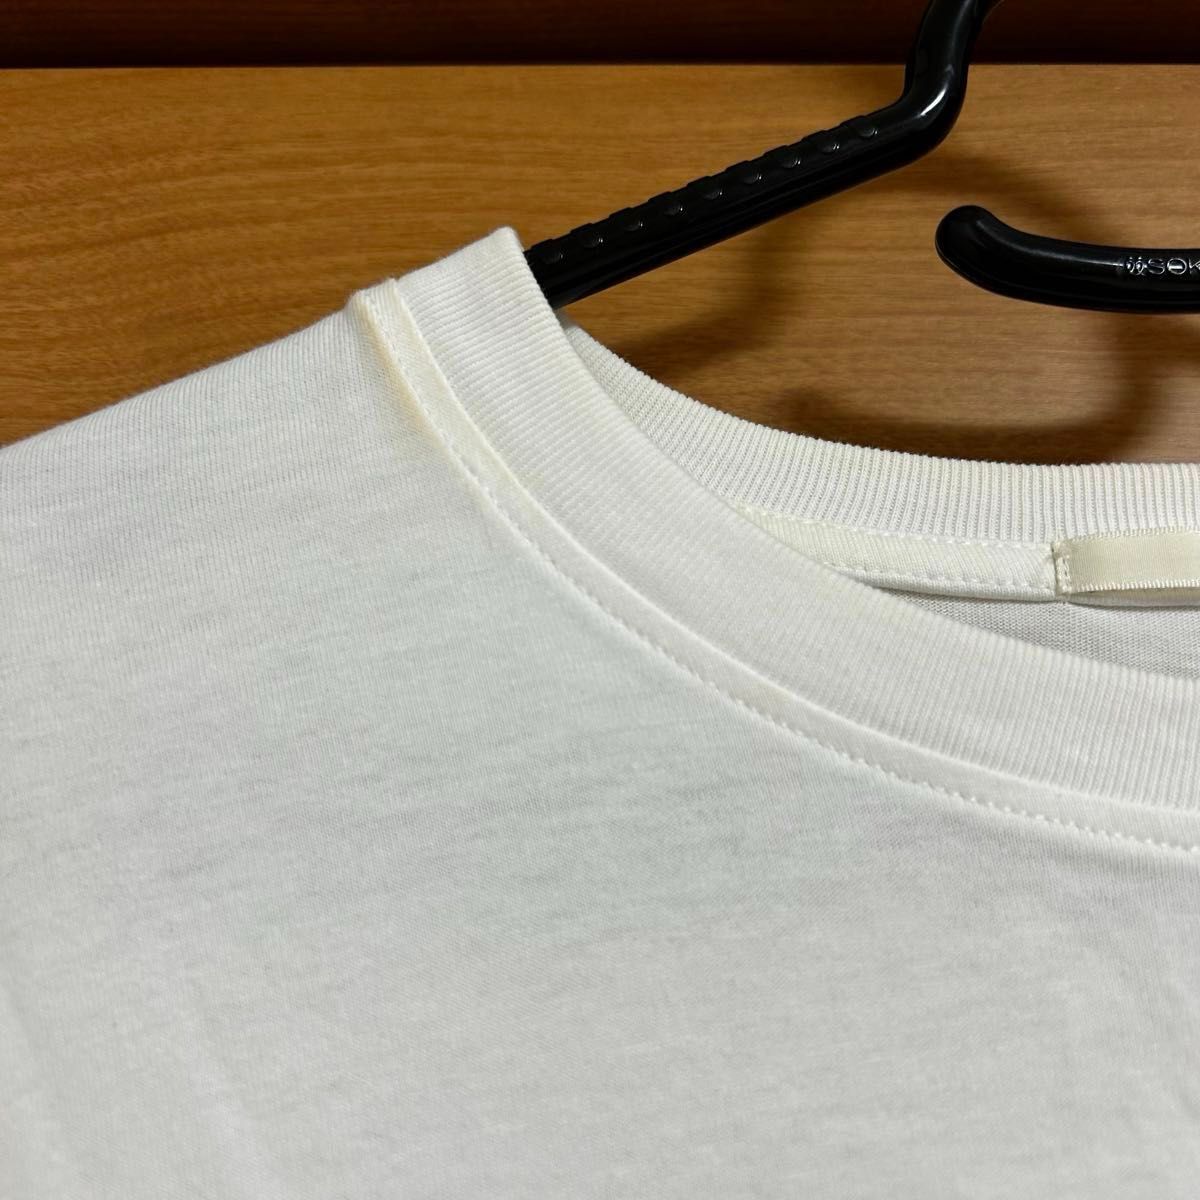 【最終価格】GU 長袖Tシャツ Mサイズ